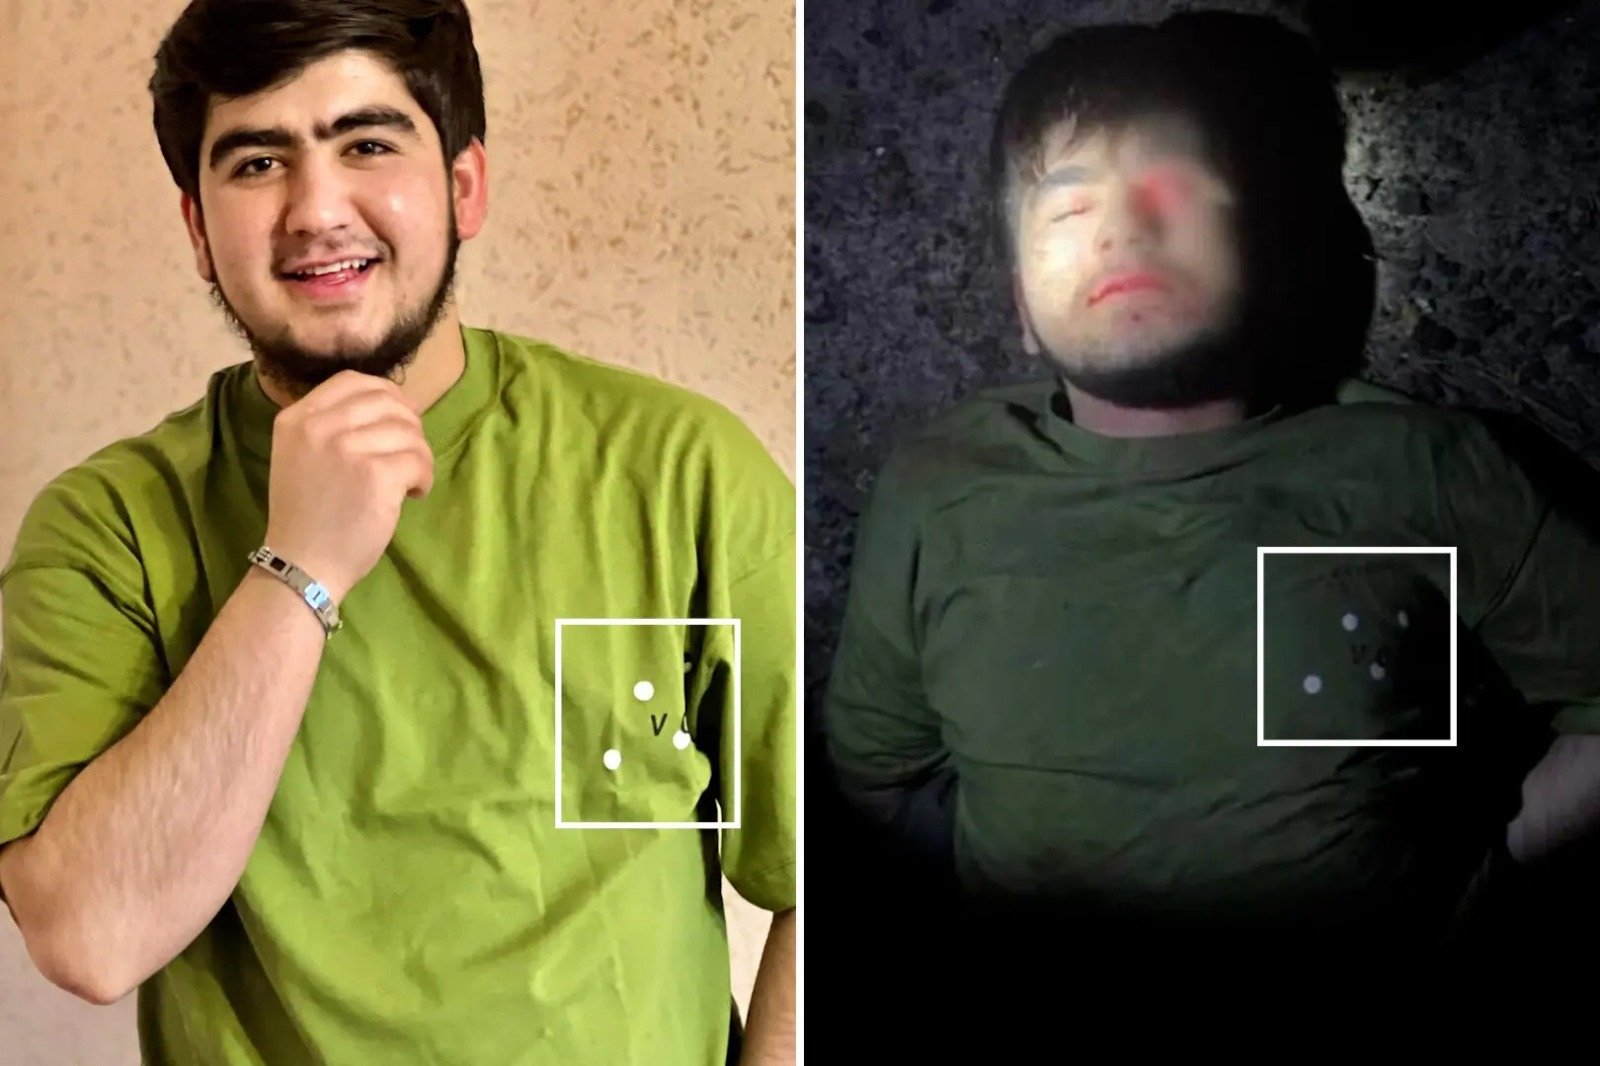 法佐夫在其社交平台上的一张照片中穿著一件绿色T恤，与袭击者之一所穿的绿色T恤相同。（图取自社交平台Vkontakte/Telegram）